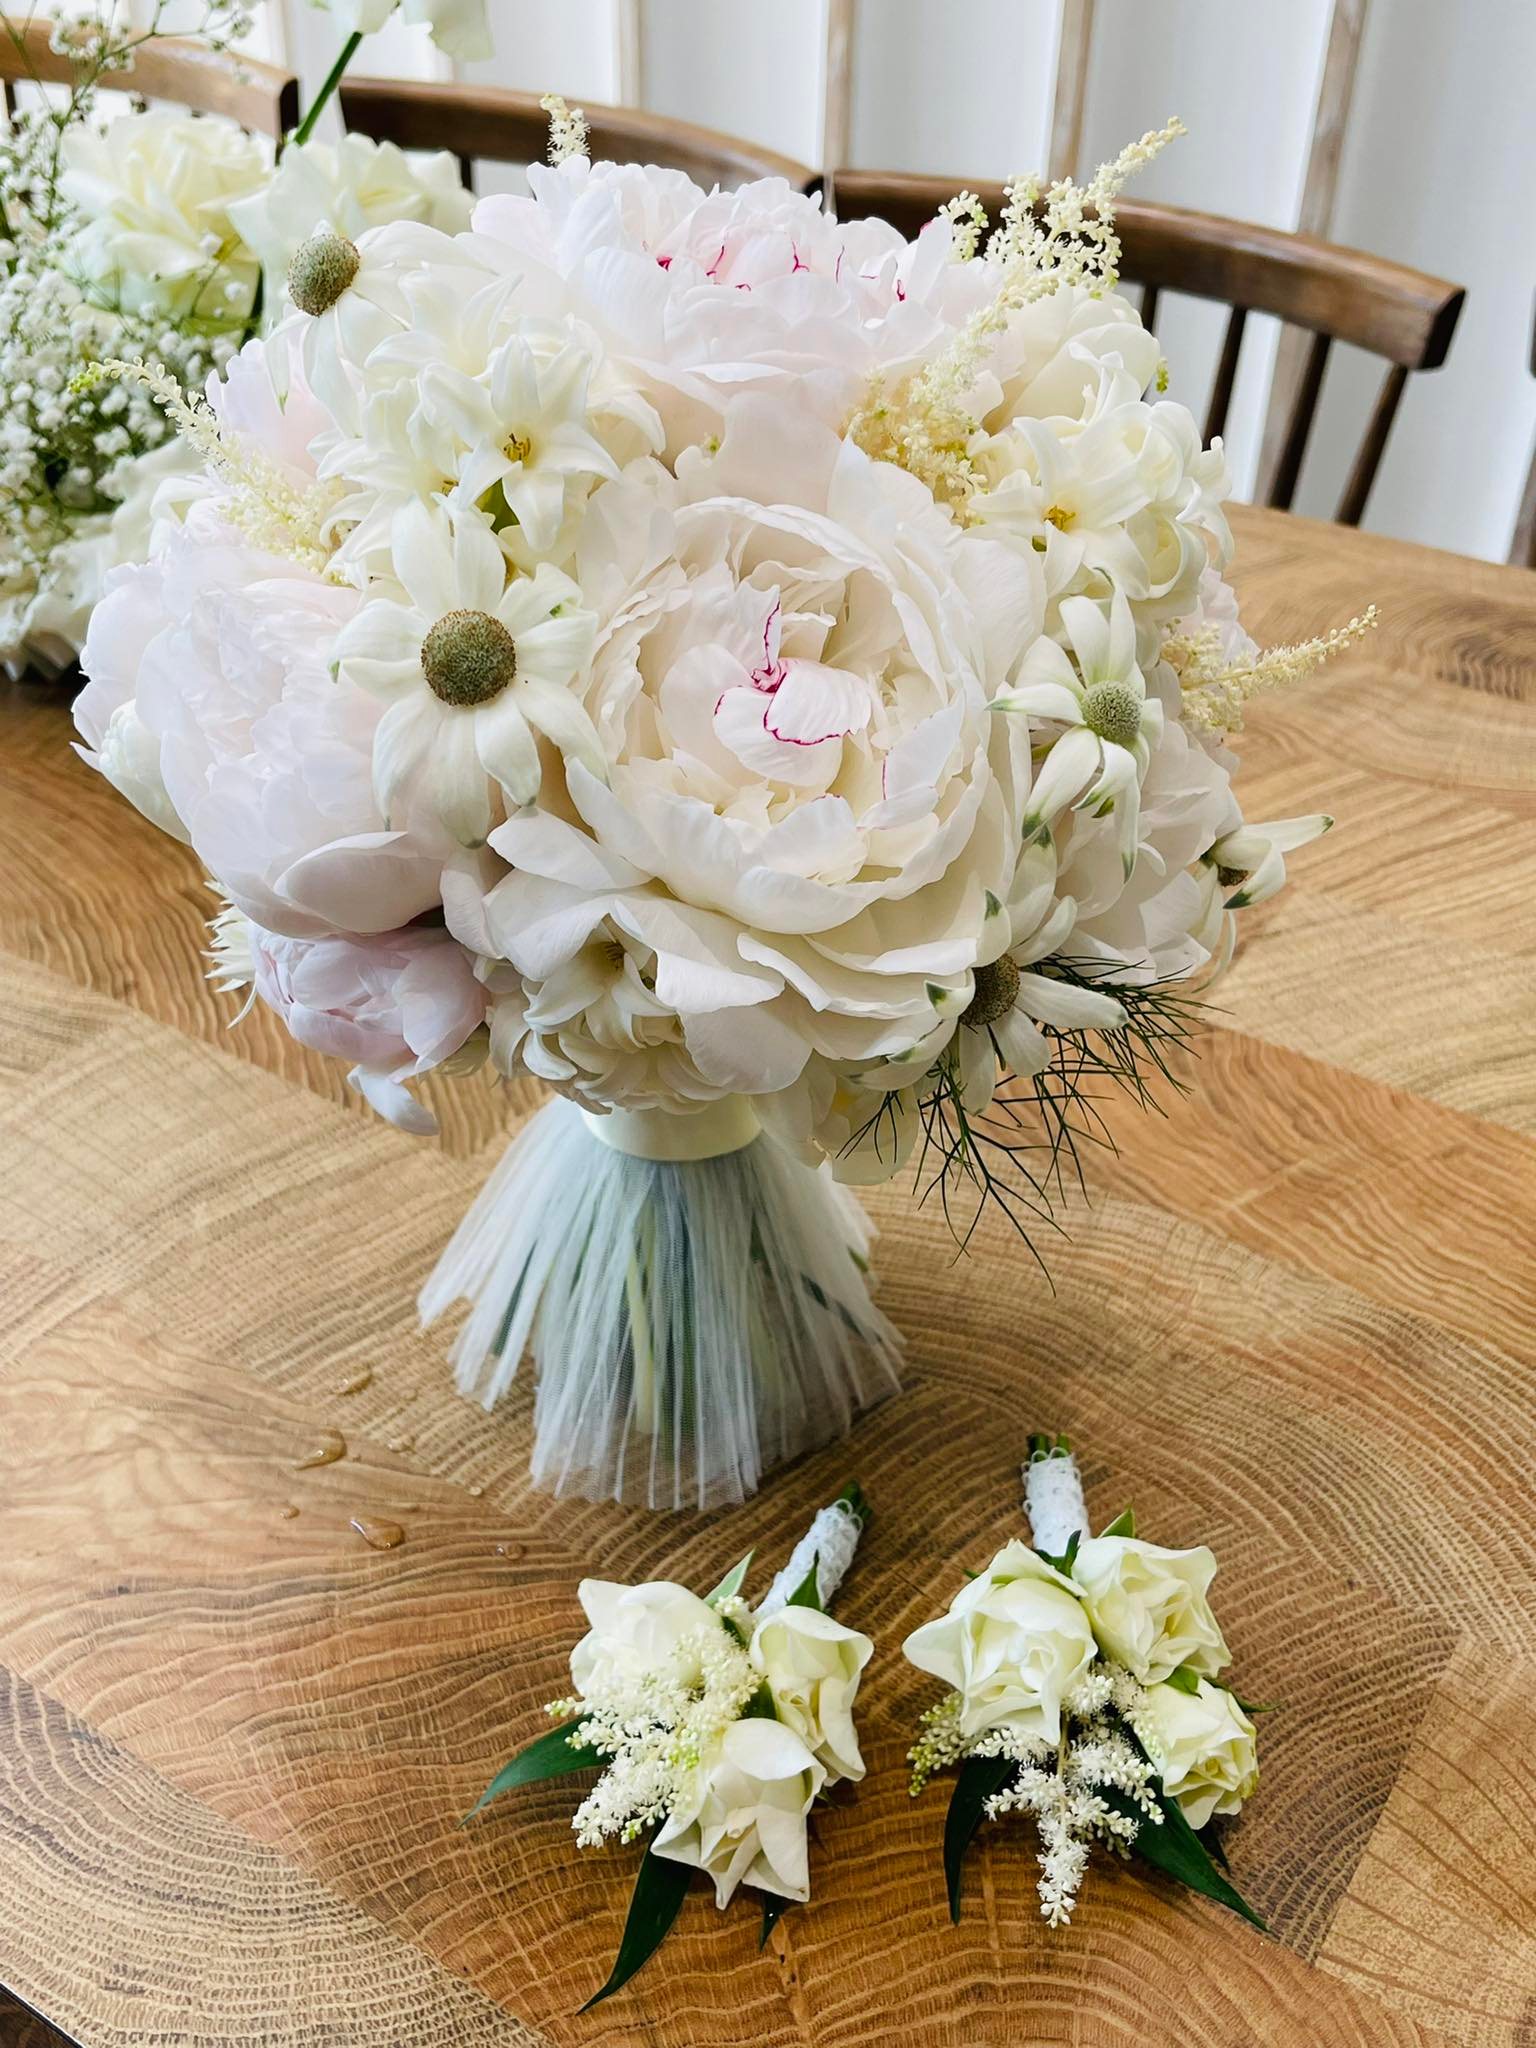 Đám cưới Phương Trinh Jolie - Lý Bình: Nhà riêng trang hoàng đầy hoa tươi, tông màu cưới xanh mint quá xinh-8